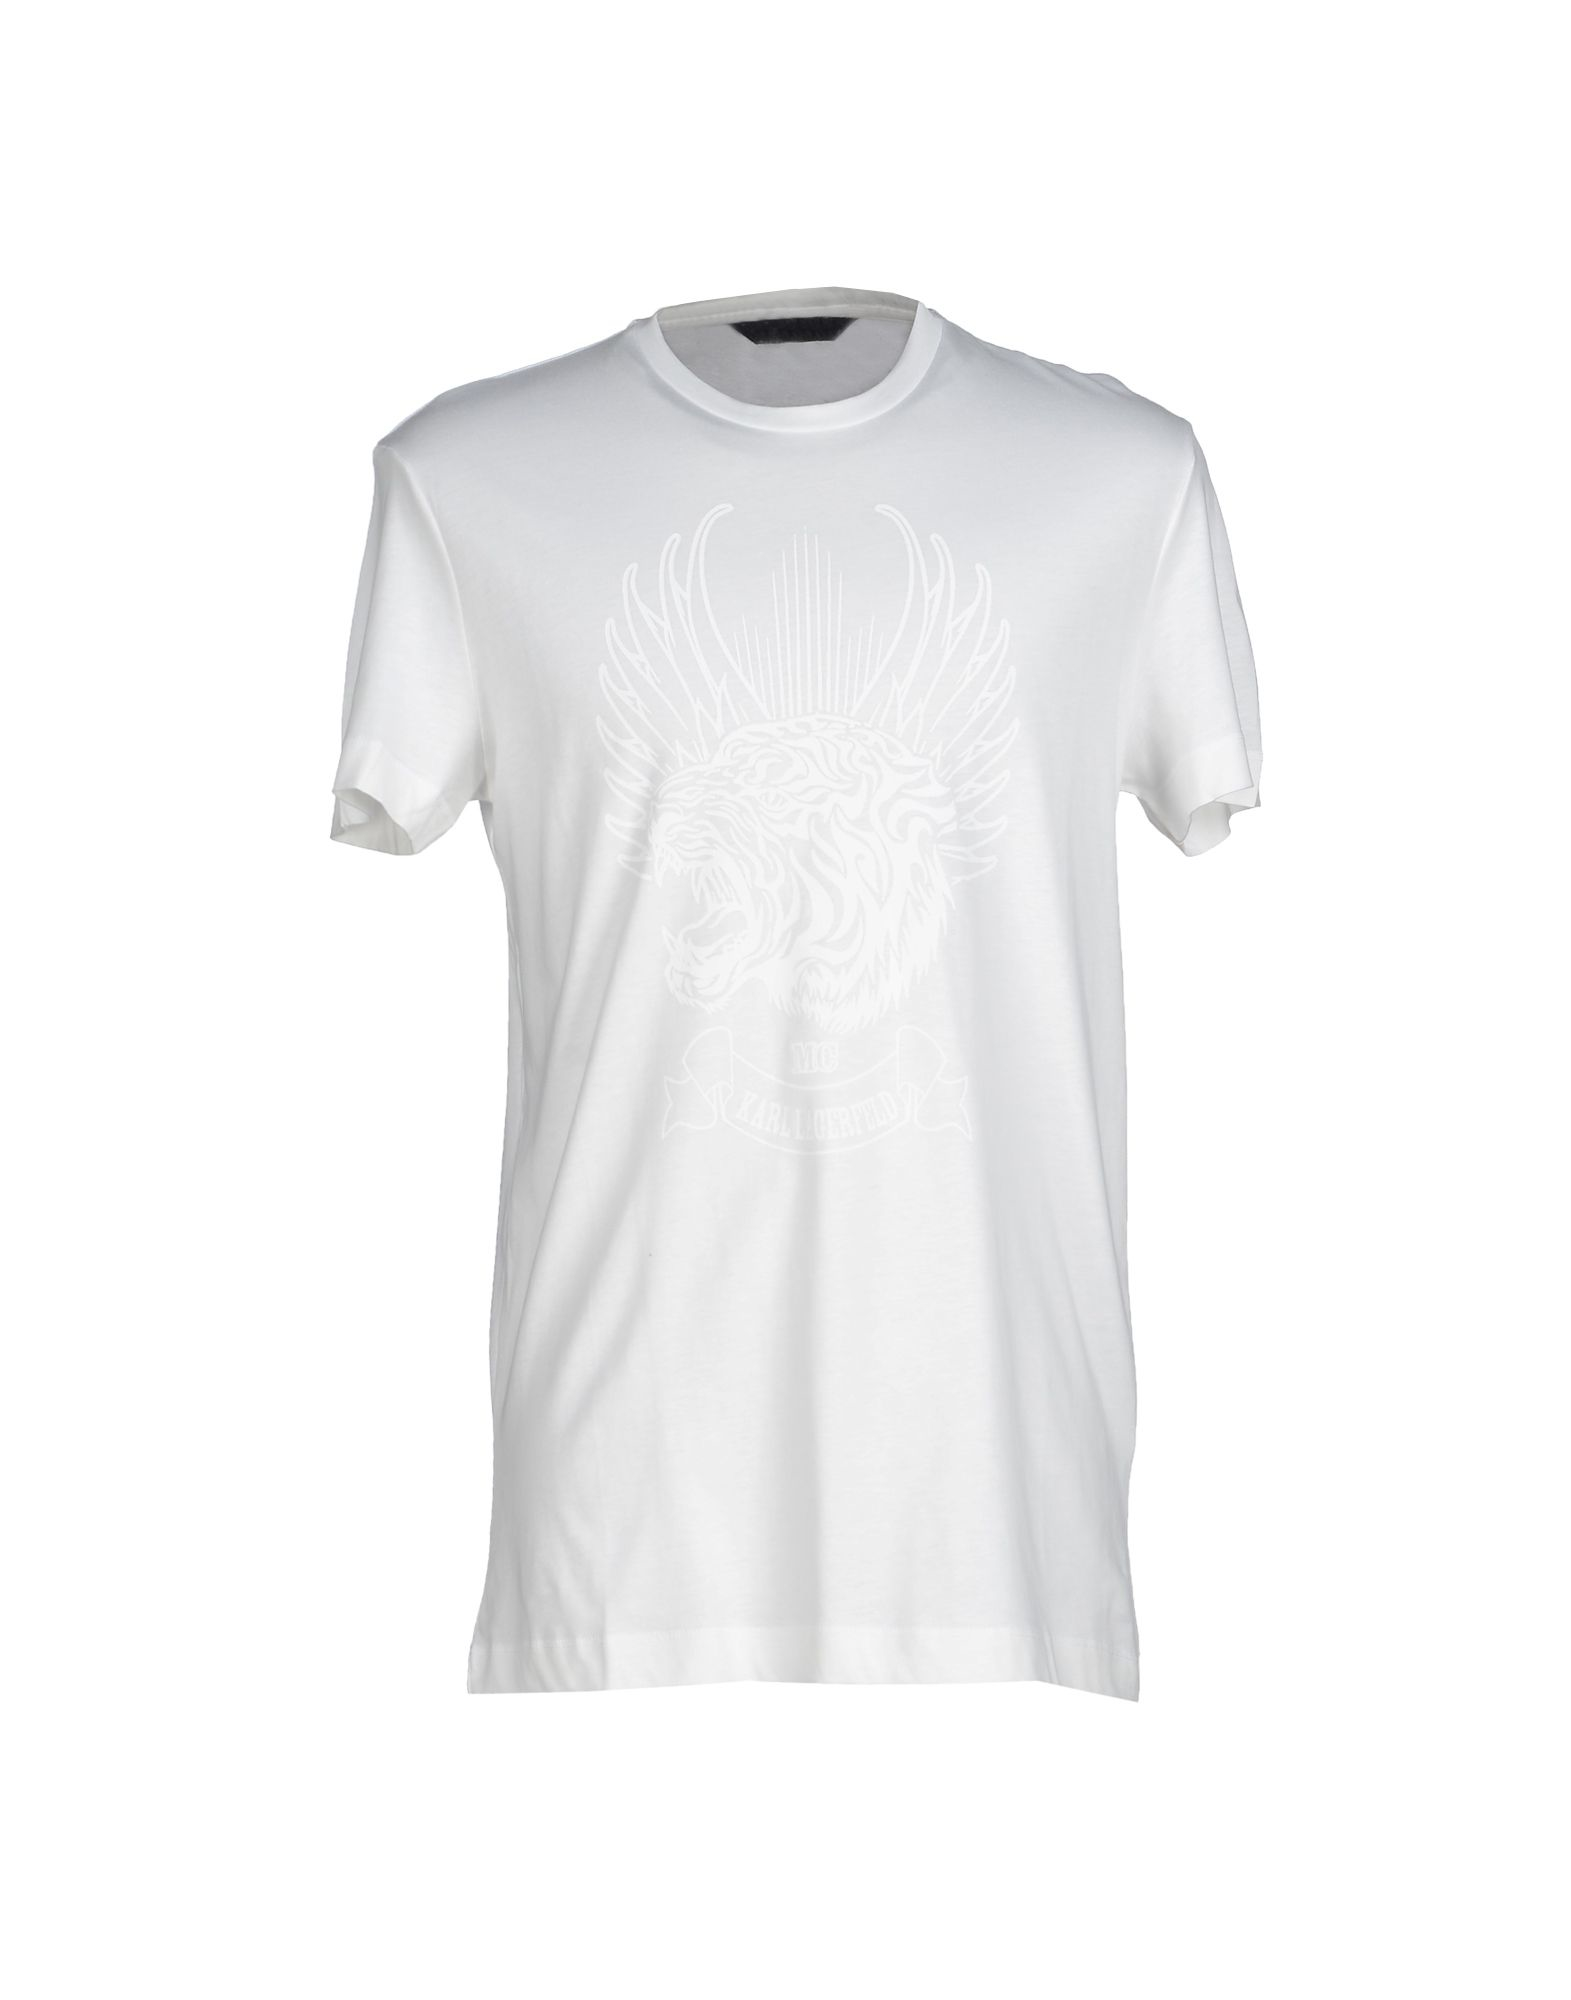 Karl lagerfeld T-shirt in White for Men | Lyst